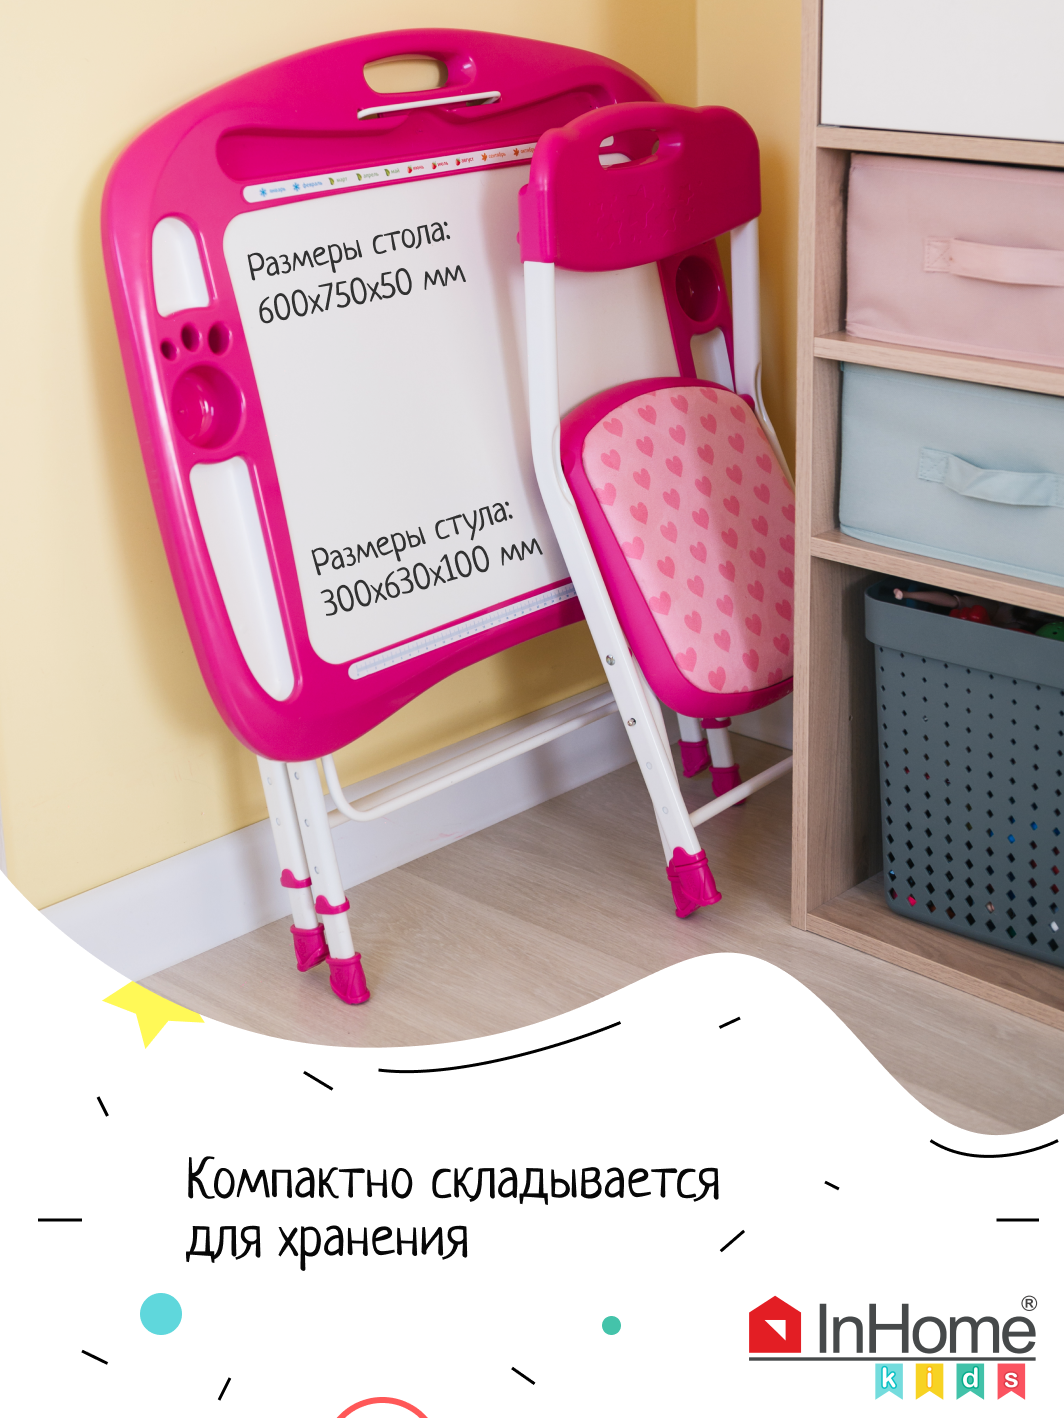 Комплект детской мебели InHome стол-парта и мягкий стульчик - фото 12